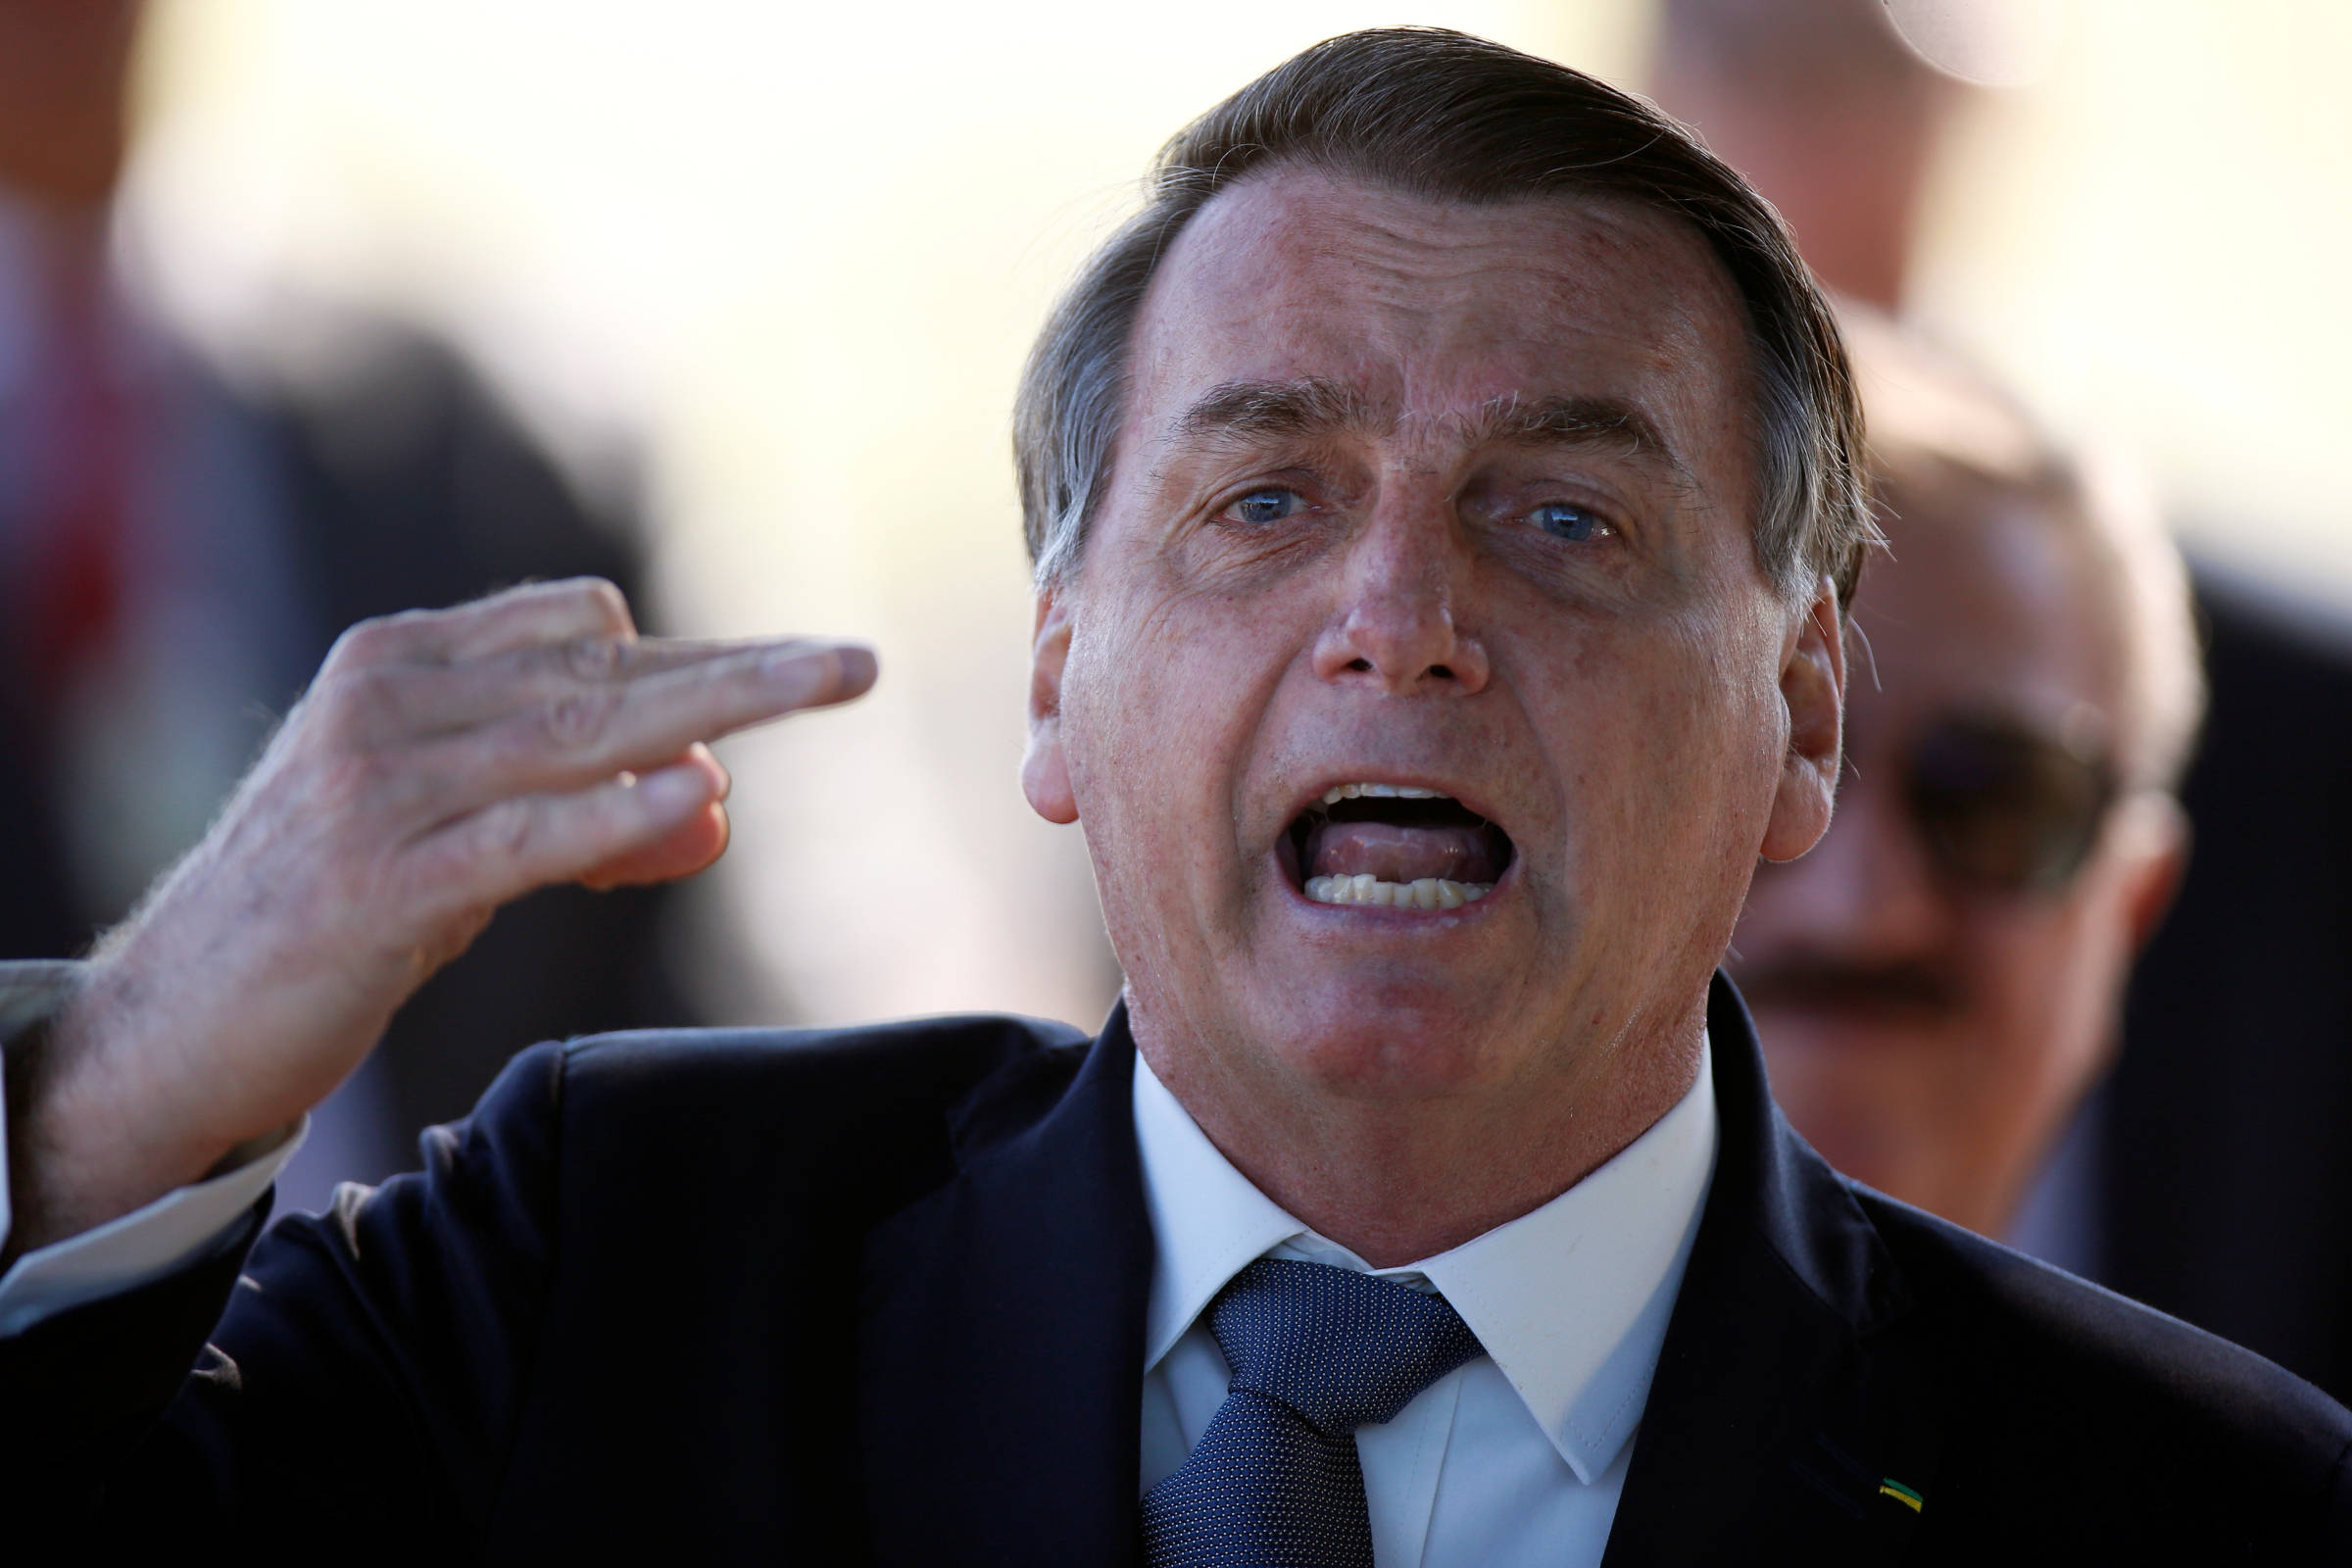 Ou fazemos eleições limpas no Brasil ou não temos eleições', diz Bolsonaro  em nova ameaça - 08/07/2021 - Poder - Folha